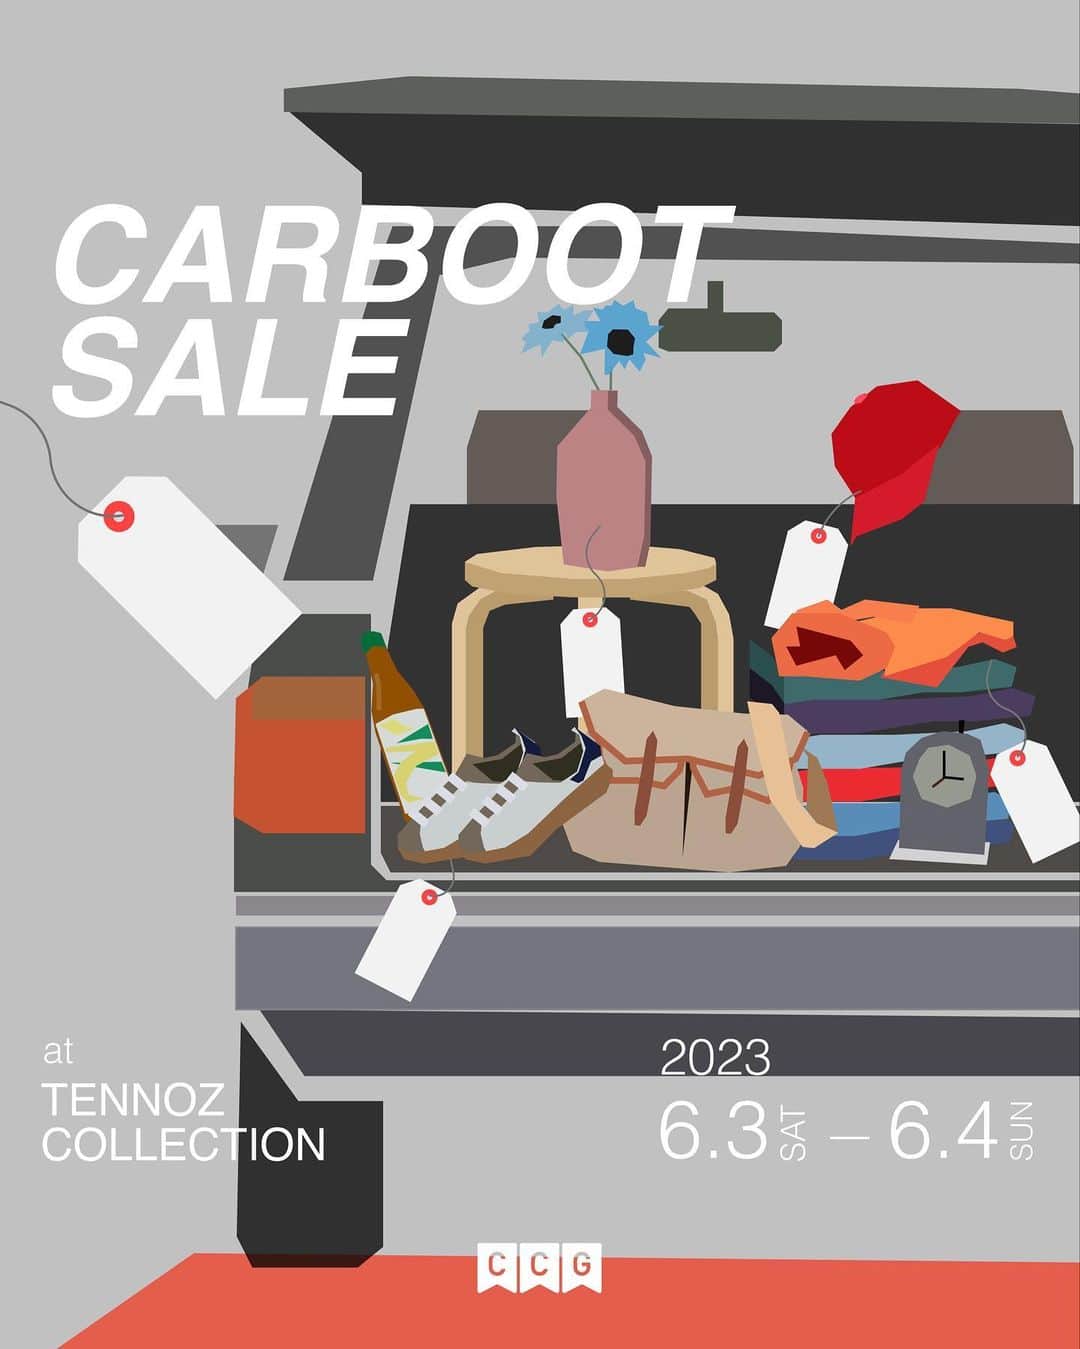 McGuffinさんのインスタグラム写真 - (McGuffinInstagram)「⚡McGuffin Street News⚡  【 CARBOOT SALE at TENNOZ COLLECTION 】  @car_city_guide   CCGによるCARBOOT SALEを、いよいよ来月に迫った6/3-4のTENNOZ COLLECTIONにて開催。  " Carboot Sale "とは、クルマのトランクに売り物を載せるスタイルのフリーマーケット。 洋服、家具、花瓶、アクセサリー、レコードなど様々な物がクルマに積まれた独特の雰囲気を楽しんで💫  なにより今回もバラエティ豊かな出店者さんが集まってくださいました。 もちろん沢山の商品と共に並ぶのも素敵なクルマばかり！ クルマを見に来るだけでも楽しめるかも？  詳細は是非それぞれのプロフィールからチェックしてみてね🤞🏻  -----  【出店者一覧】  🪑 2takt ( @2taktstore ) 《 ヨーロピアンヴィンテージ家具、雑貨》  👕 4:ヨン ( @k_j4 ) 《 セレクト古着 》  🧺 Cornershop SOIL ( @soil_cornershop ) ※6/4のみ 《 食品・日用品 / オリジナルアイテム 》  💍 銀、真鍮 ( @ginshinchu ) 《 ハンドメイドメタルアクセサリー / 受注販売・一部店頭販売 》  🕰 Hand To Mouth ( @htmtokyo ) 《 ユーズド雑貨 / 古着 / オリジナルTシャツ 》  🏺 NETT ( @nett_vase ) 《 ビンテージ&オリジナル花瓶 / ビンテージマグ / 生花 》  🛞 ONO WHEEL ( @onowheel_nerima_tokyo ) 《 街乗り向けカスタムロードバイク / セレクトカー 》  🚘 Rendez-vous ( @rendezvoustokyo ) 《 コレクタブルカーの展示 / オリジナルグッズ 》  🌷 T's Flower Salon ( @tsflowersalon ) ※6/4のみ 《 オリジナルフラワーアレンジメント 》  -  もちろんCARBOOT SALE以外にも多くの出店やキッチンカーが並ぶ、古いものが好きなら間違いなく楽しめるイベント。 運河が広がる天王洲エリアは休日を充実させるにはぴったりな場所だから、ぜひ遊びにきてね。  🎨Illustrated & Designed by CCG  -----  📍 〒140-0002 東京都品川区東品川２丁目３−２"アイルしながわ"  #carcityguide #カーシティガイド #CARBOOTSALEBYCCG #イベント #イベント情報 #フリーマーケット #フリマ #tennozharbormarket #tennozcollection #イベント #イベント情報 #天王洲アイル #天王洲 #天王洲ハーバーマーケット  ※今回のイベントには無料駐車場はございません、近隣のパーキングをご利用ください🙇🏻‍♂️  -----  「TENNOZ COLLECTION」with Car City Guide @tennozharbormarket @tennozcollection  開催日程｜2022年6月3日（土）11:00 - 17:00 　　　　｜2022年6月4日（日）11:00 - 17:00 　　　　※ 時間は変更となる場合がございます  今回の天王洲コレクションは、ネオクラ世代の3人が運営するメディアサイト『車の普段使いスタイルガイド CCG』とのコラボレーション企画! クラシックカーは格好良いけど普段づかいには色々とハードルが高いよね。でも今の車は味気ないし、スタイルがなきゃカーシェアリングで十分。ど真ん中のヴィンテージも良いけどグッドユーズドは取り入れやすいし。  そんな巷のファッション好き、ヴィンテージ好きのこれからの共通言語 "ネオクラ"。相対的な価値ではなくて、自分が好きだから、というシンプルでライトな選択が今の気分。ありそうでなかった「車と古着」にフォーカスした二日間にぜひご参加ください。」5月15日 17時38分 - mcguffin_official